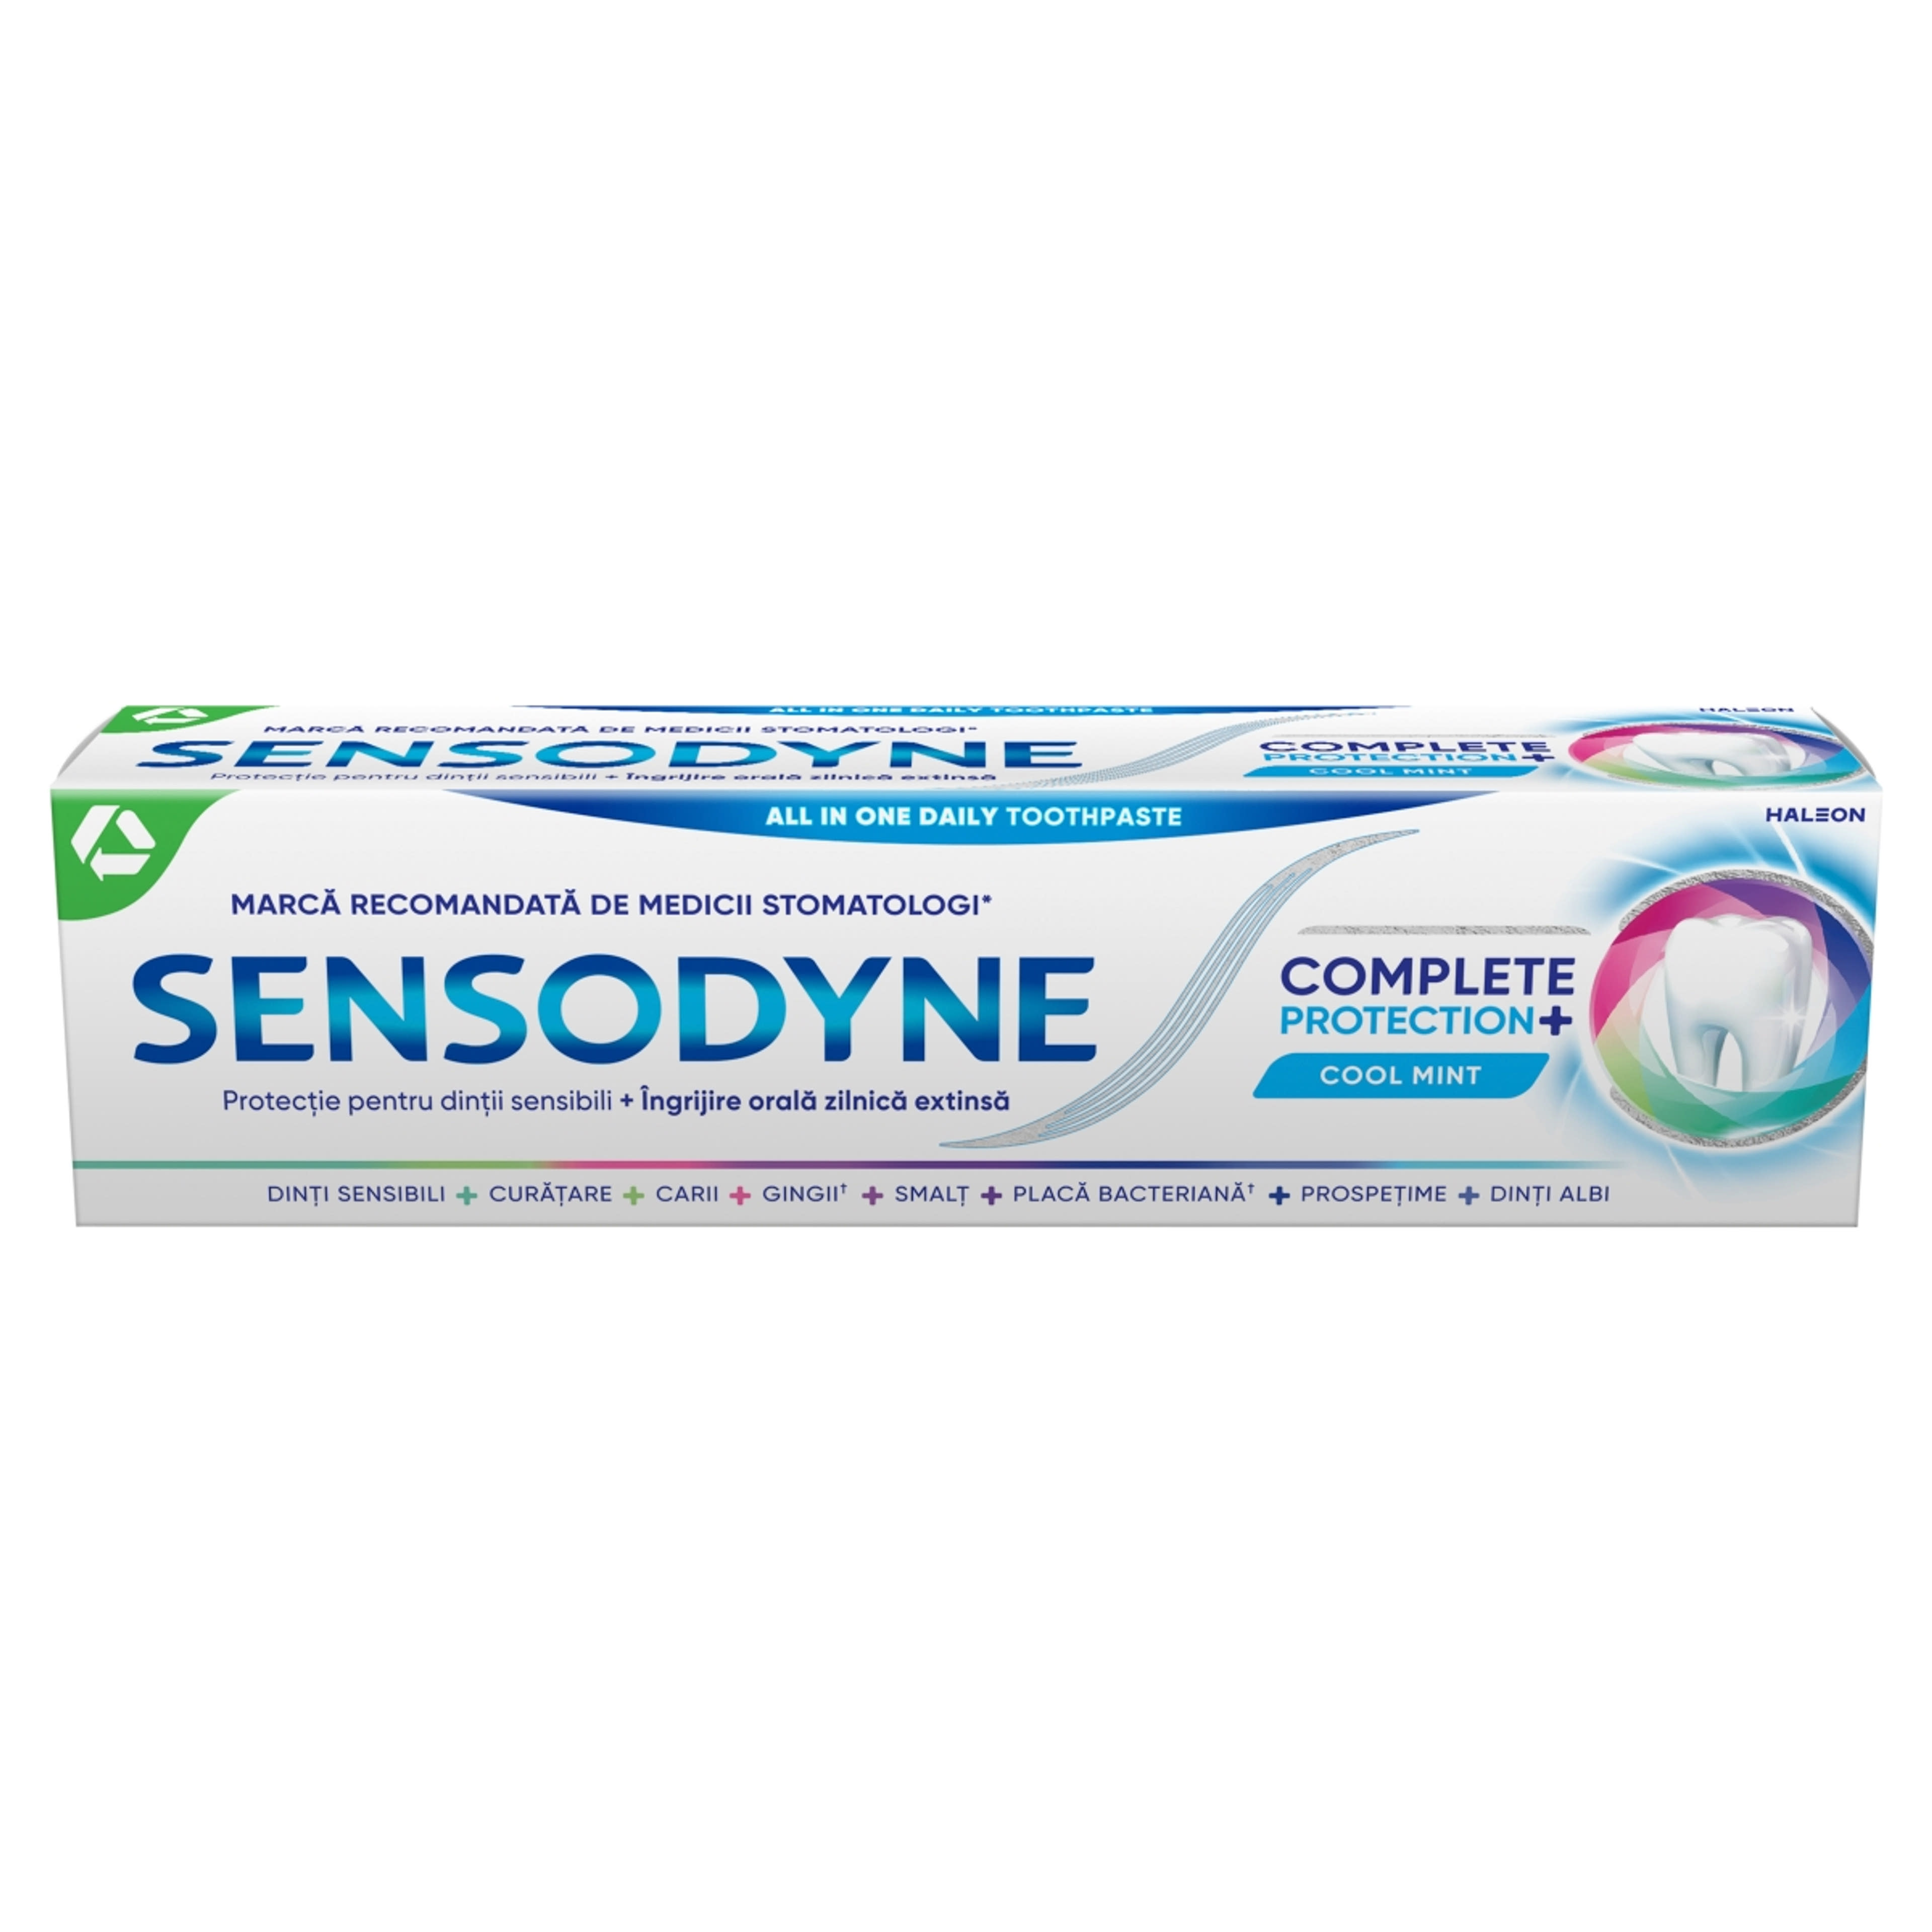 Sensodyne Complete Protection fogkrém - 75 ml-1